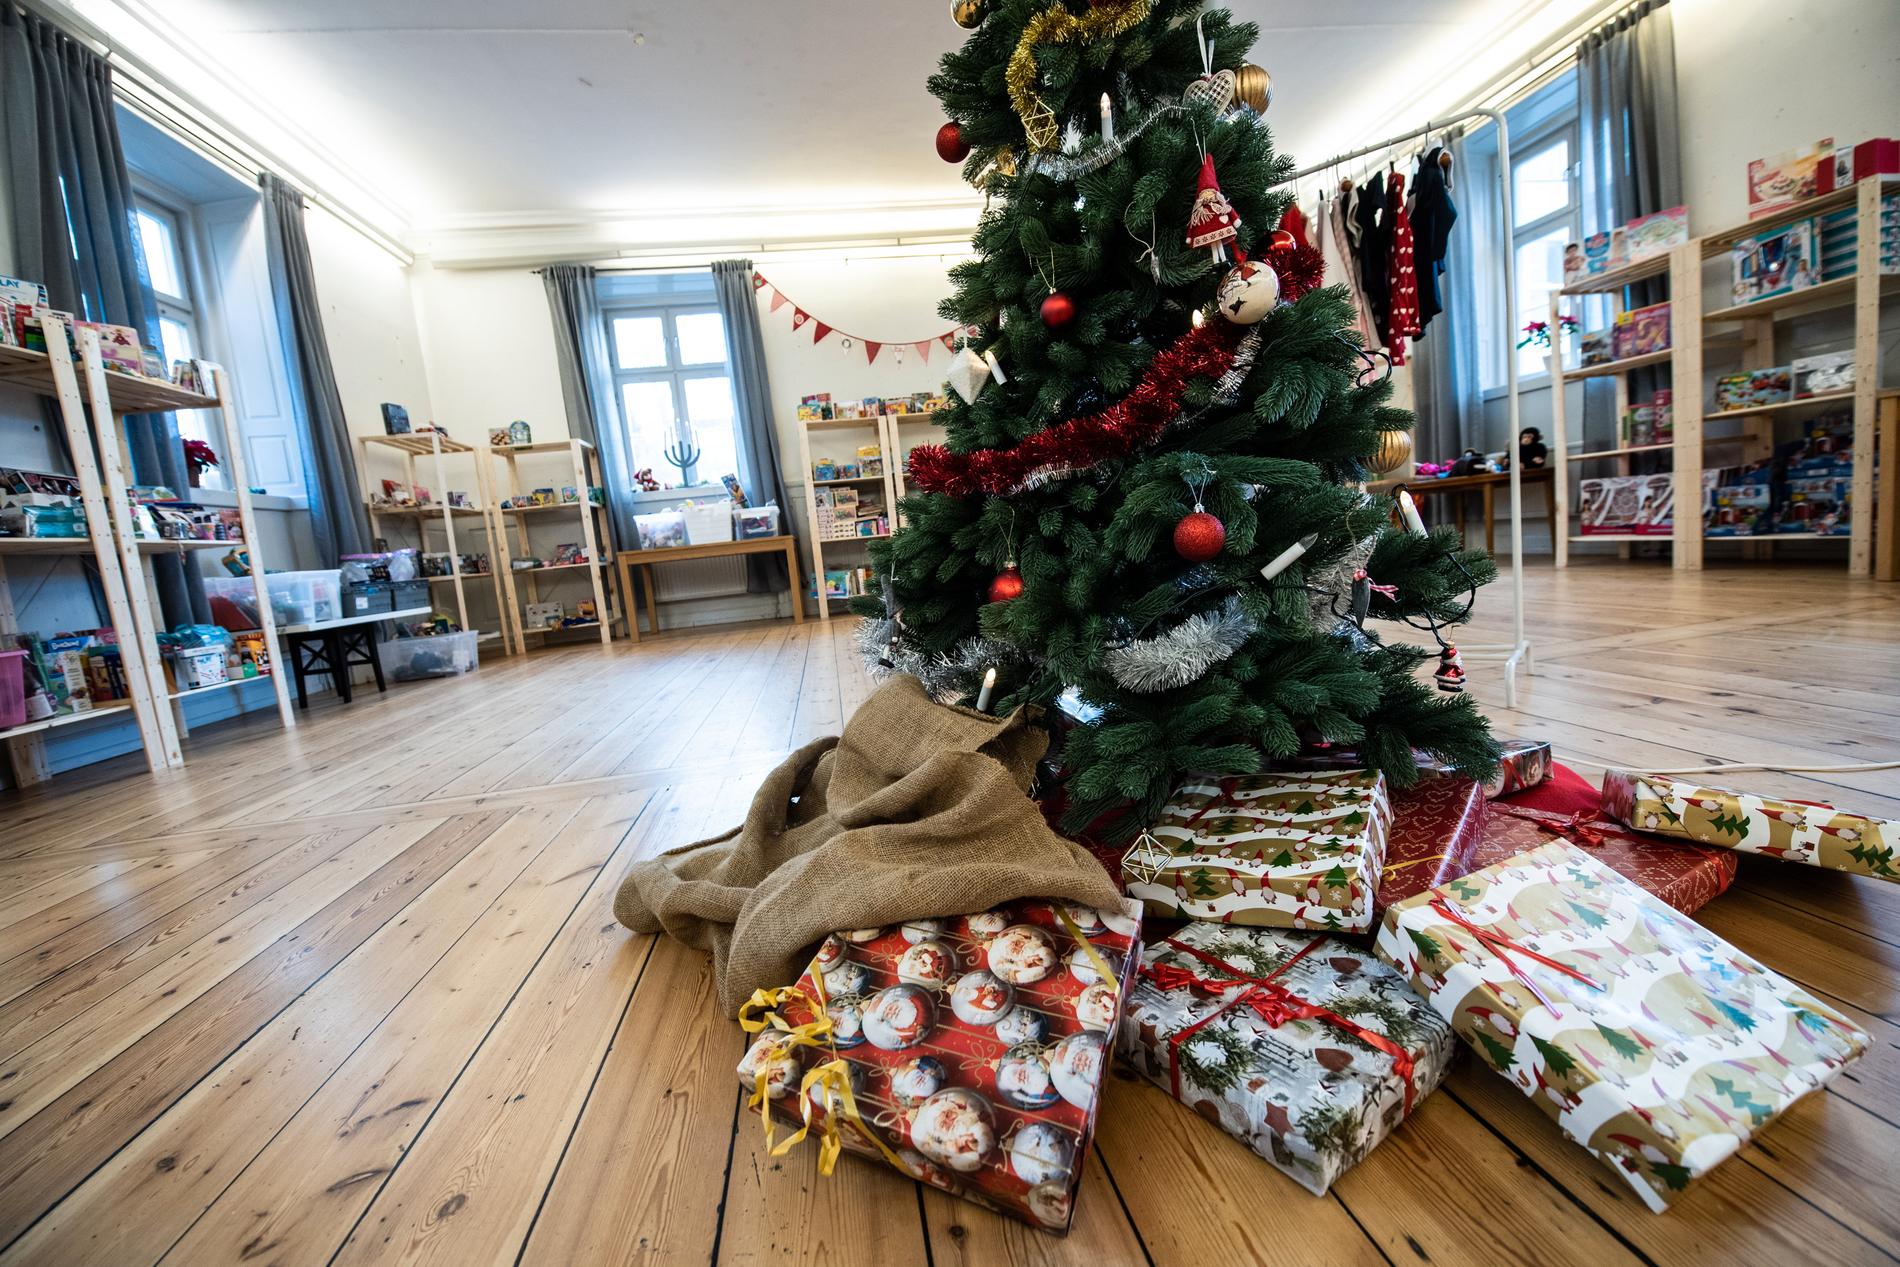 I Stockholms Stadsmissions julklappsbutik får familjer som lever i utsatthet en chans att välja julklappar till barnen.